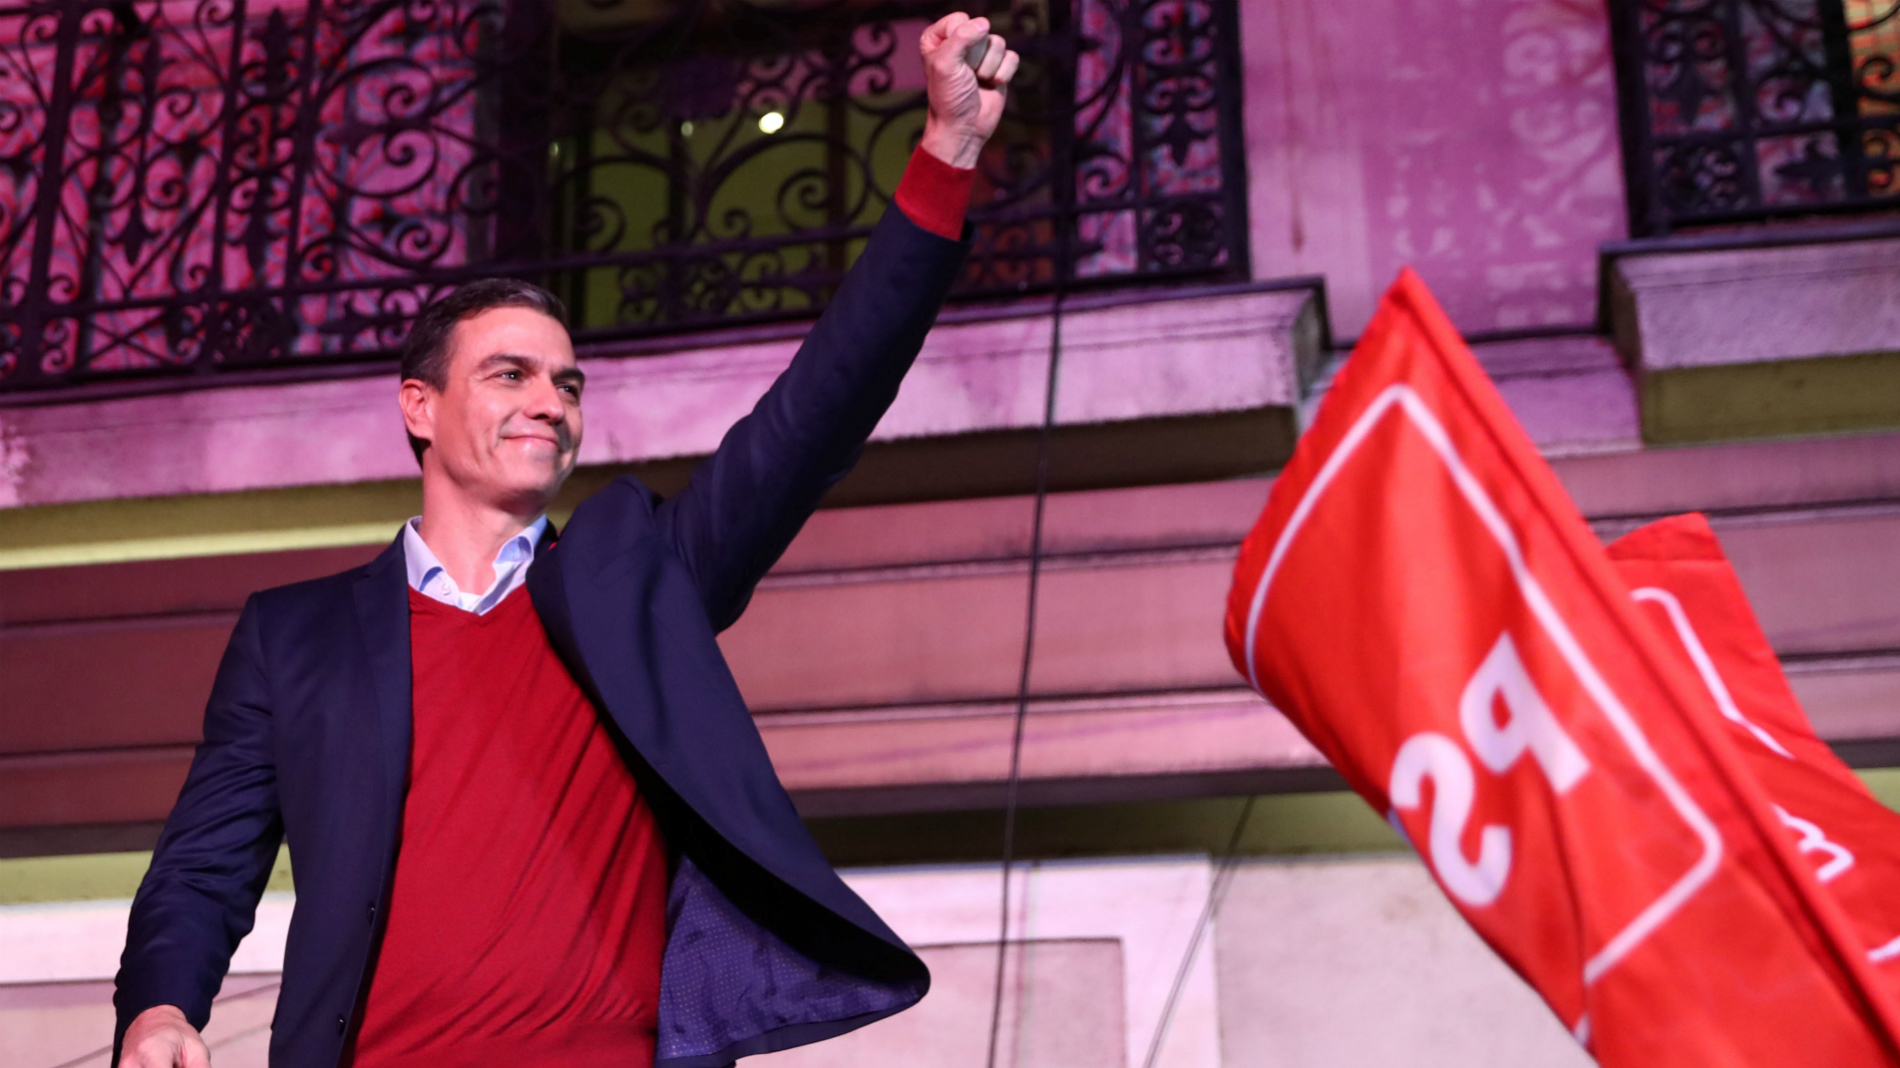 Socialistas obtienen mayoría, pero sin posibilidad de formar gobierno en España